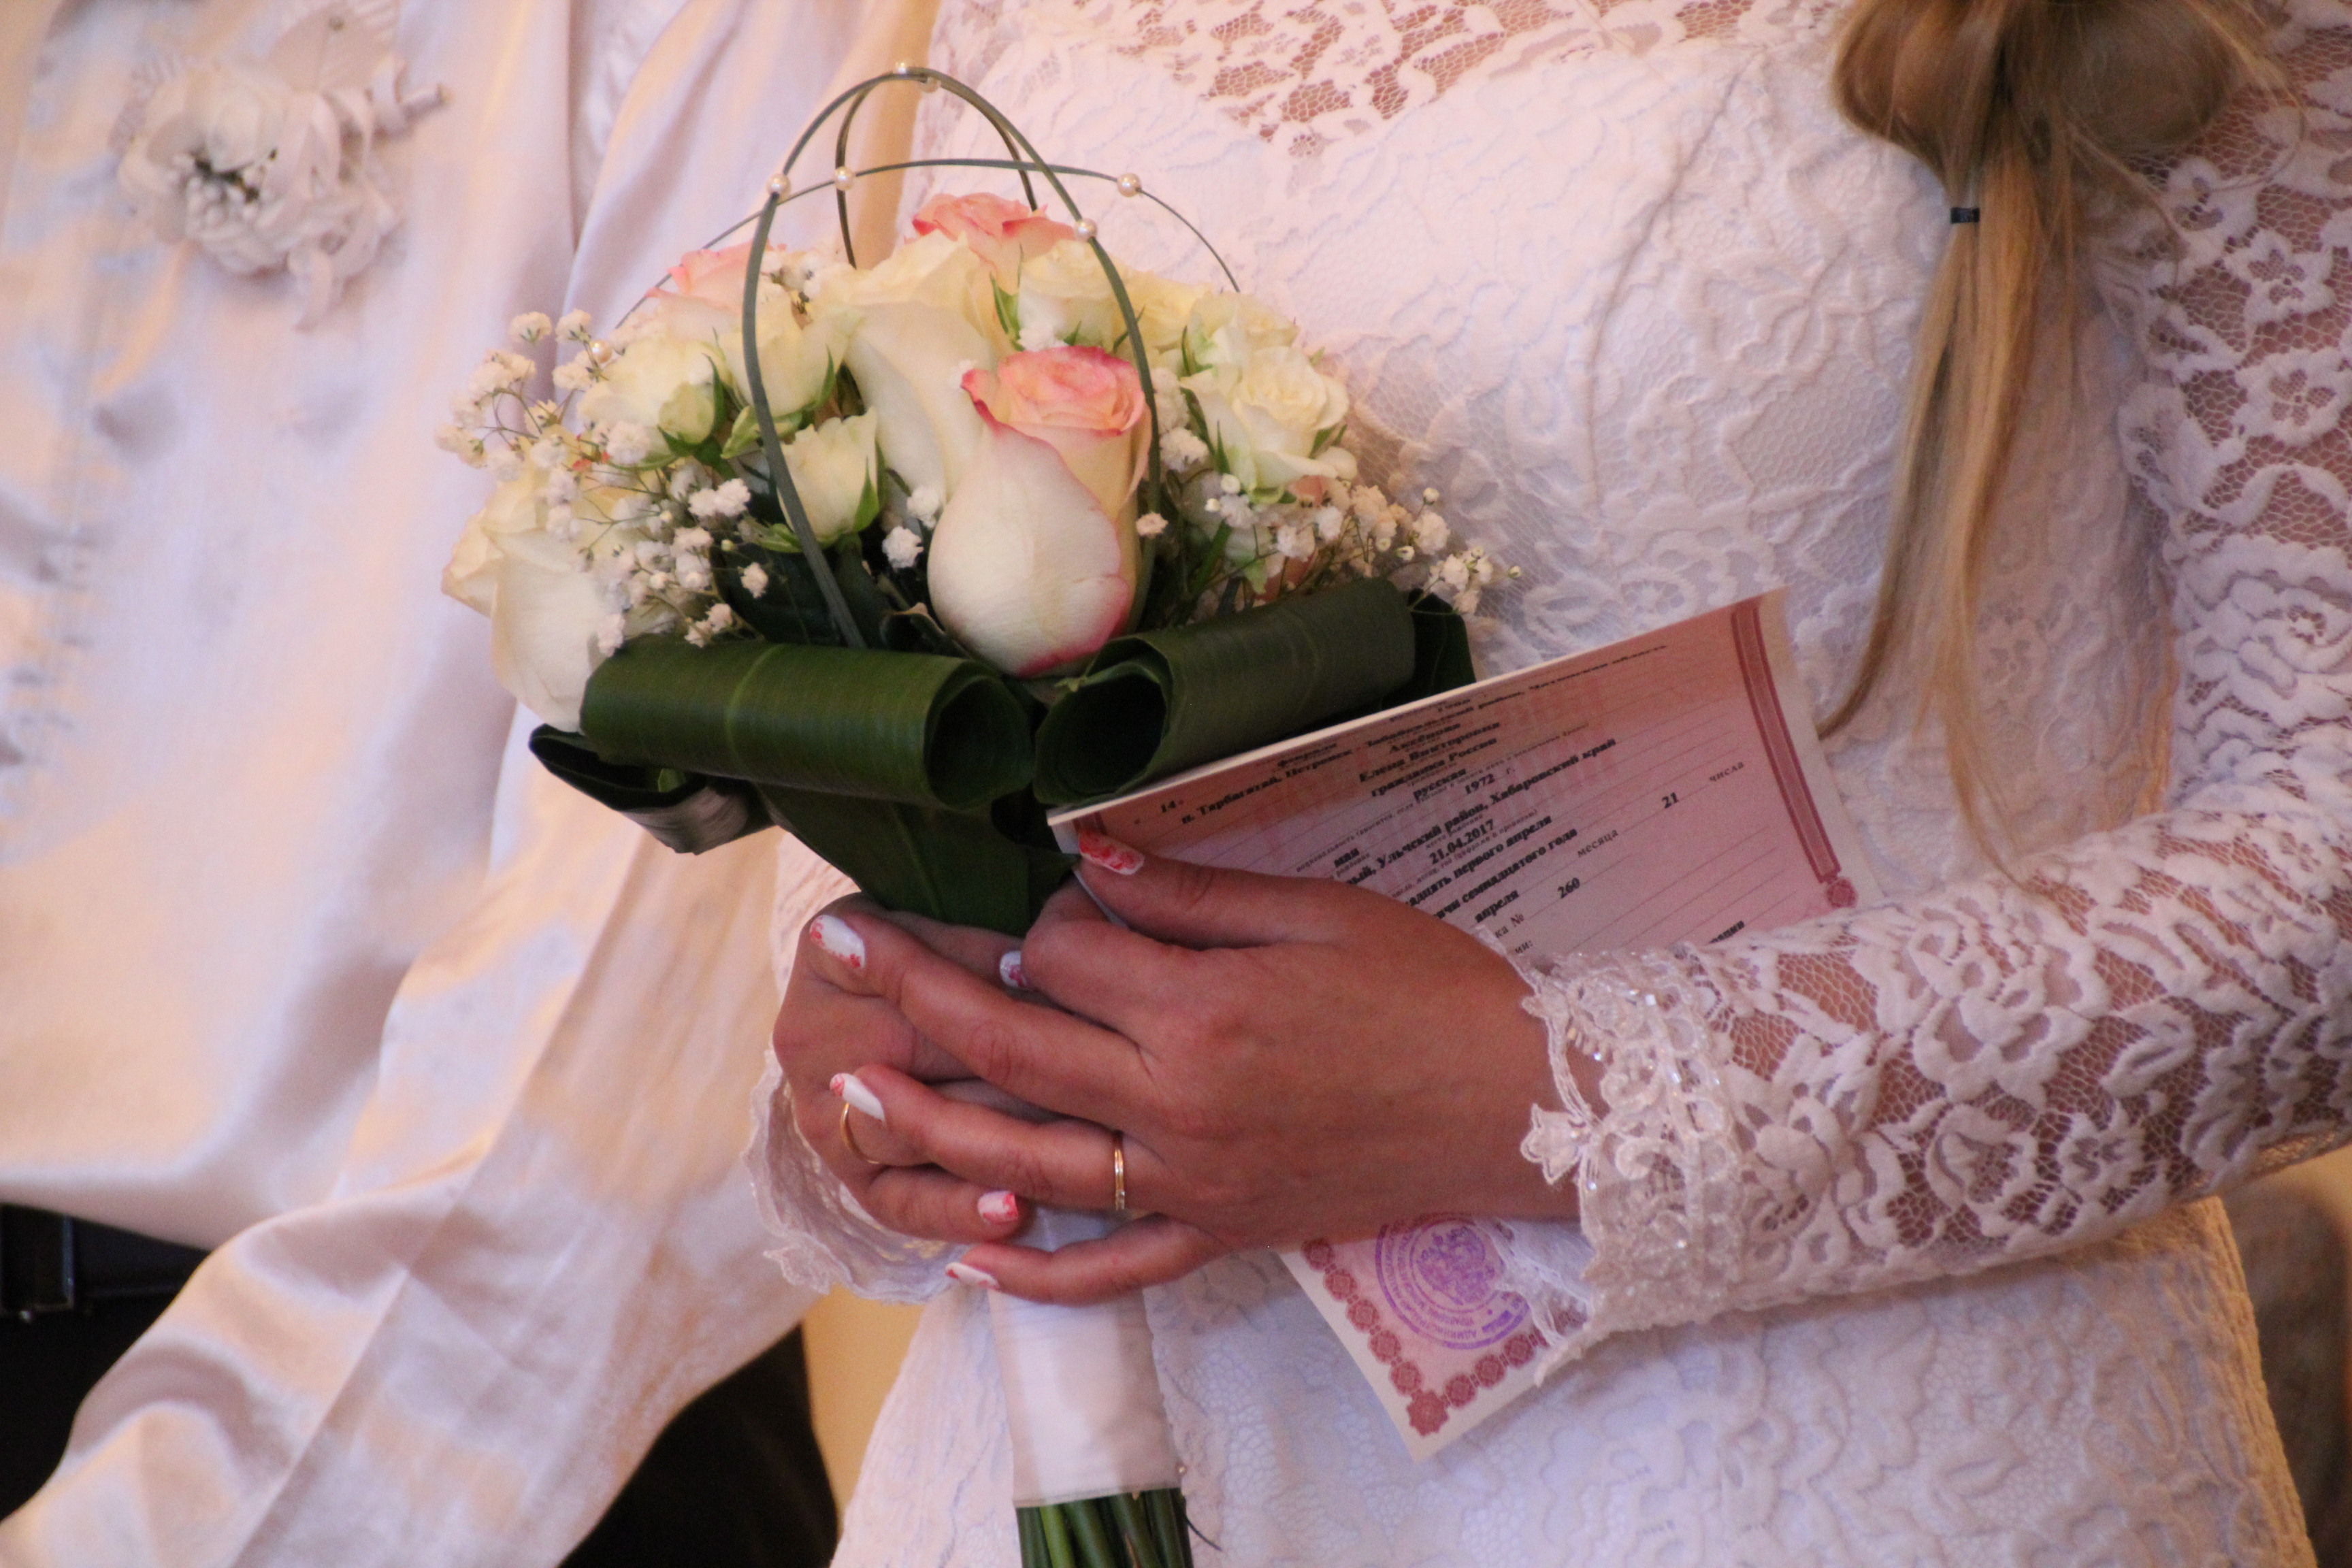 Я перепутала, думала что любовь: невеста из Владивостока сменила жениха прямо в ЗАГСе